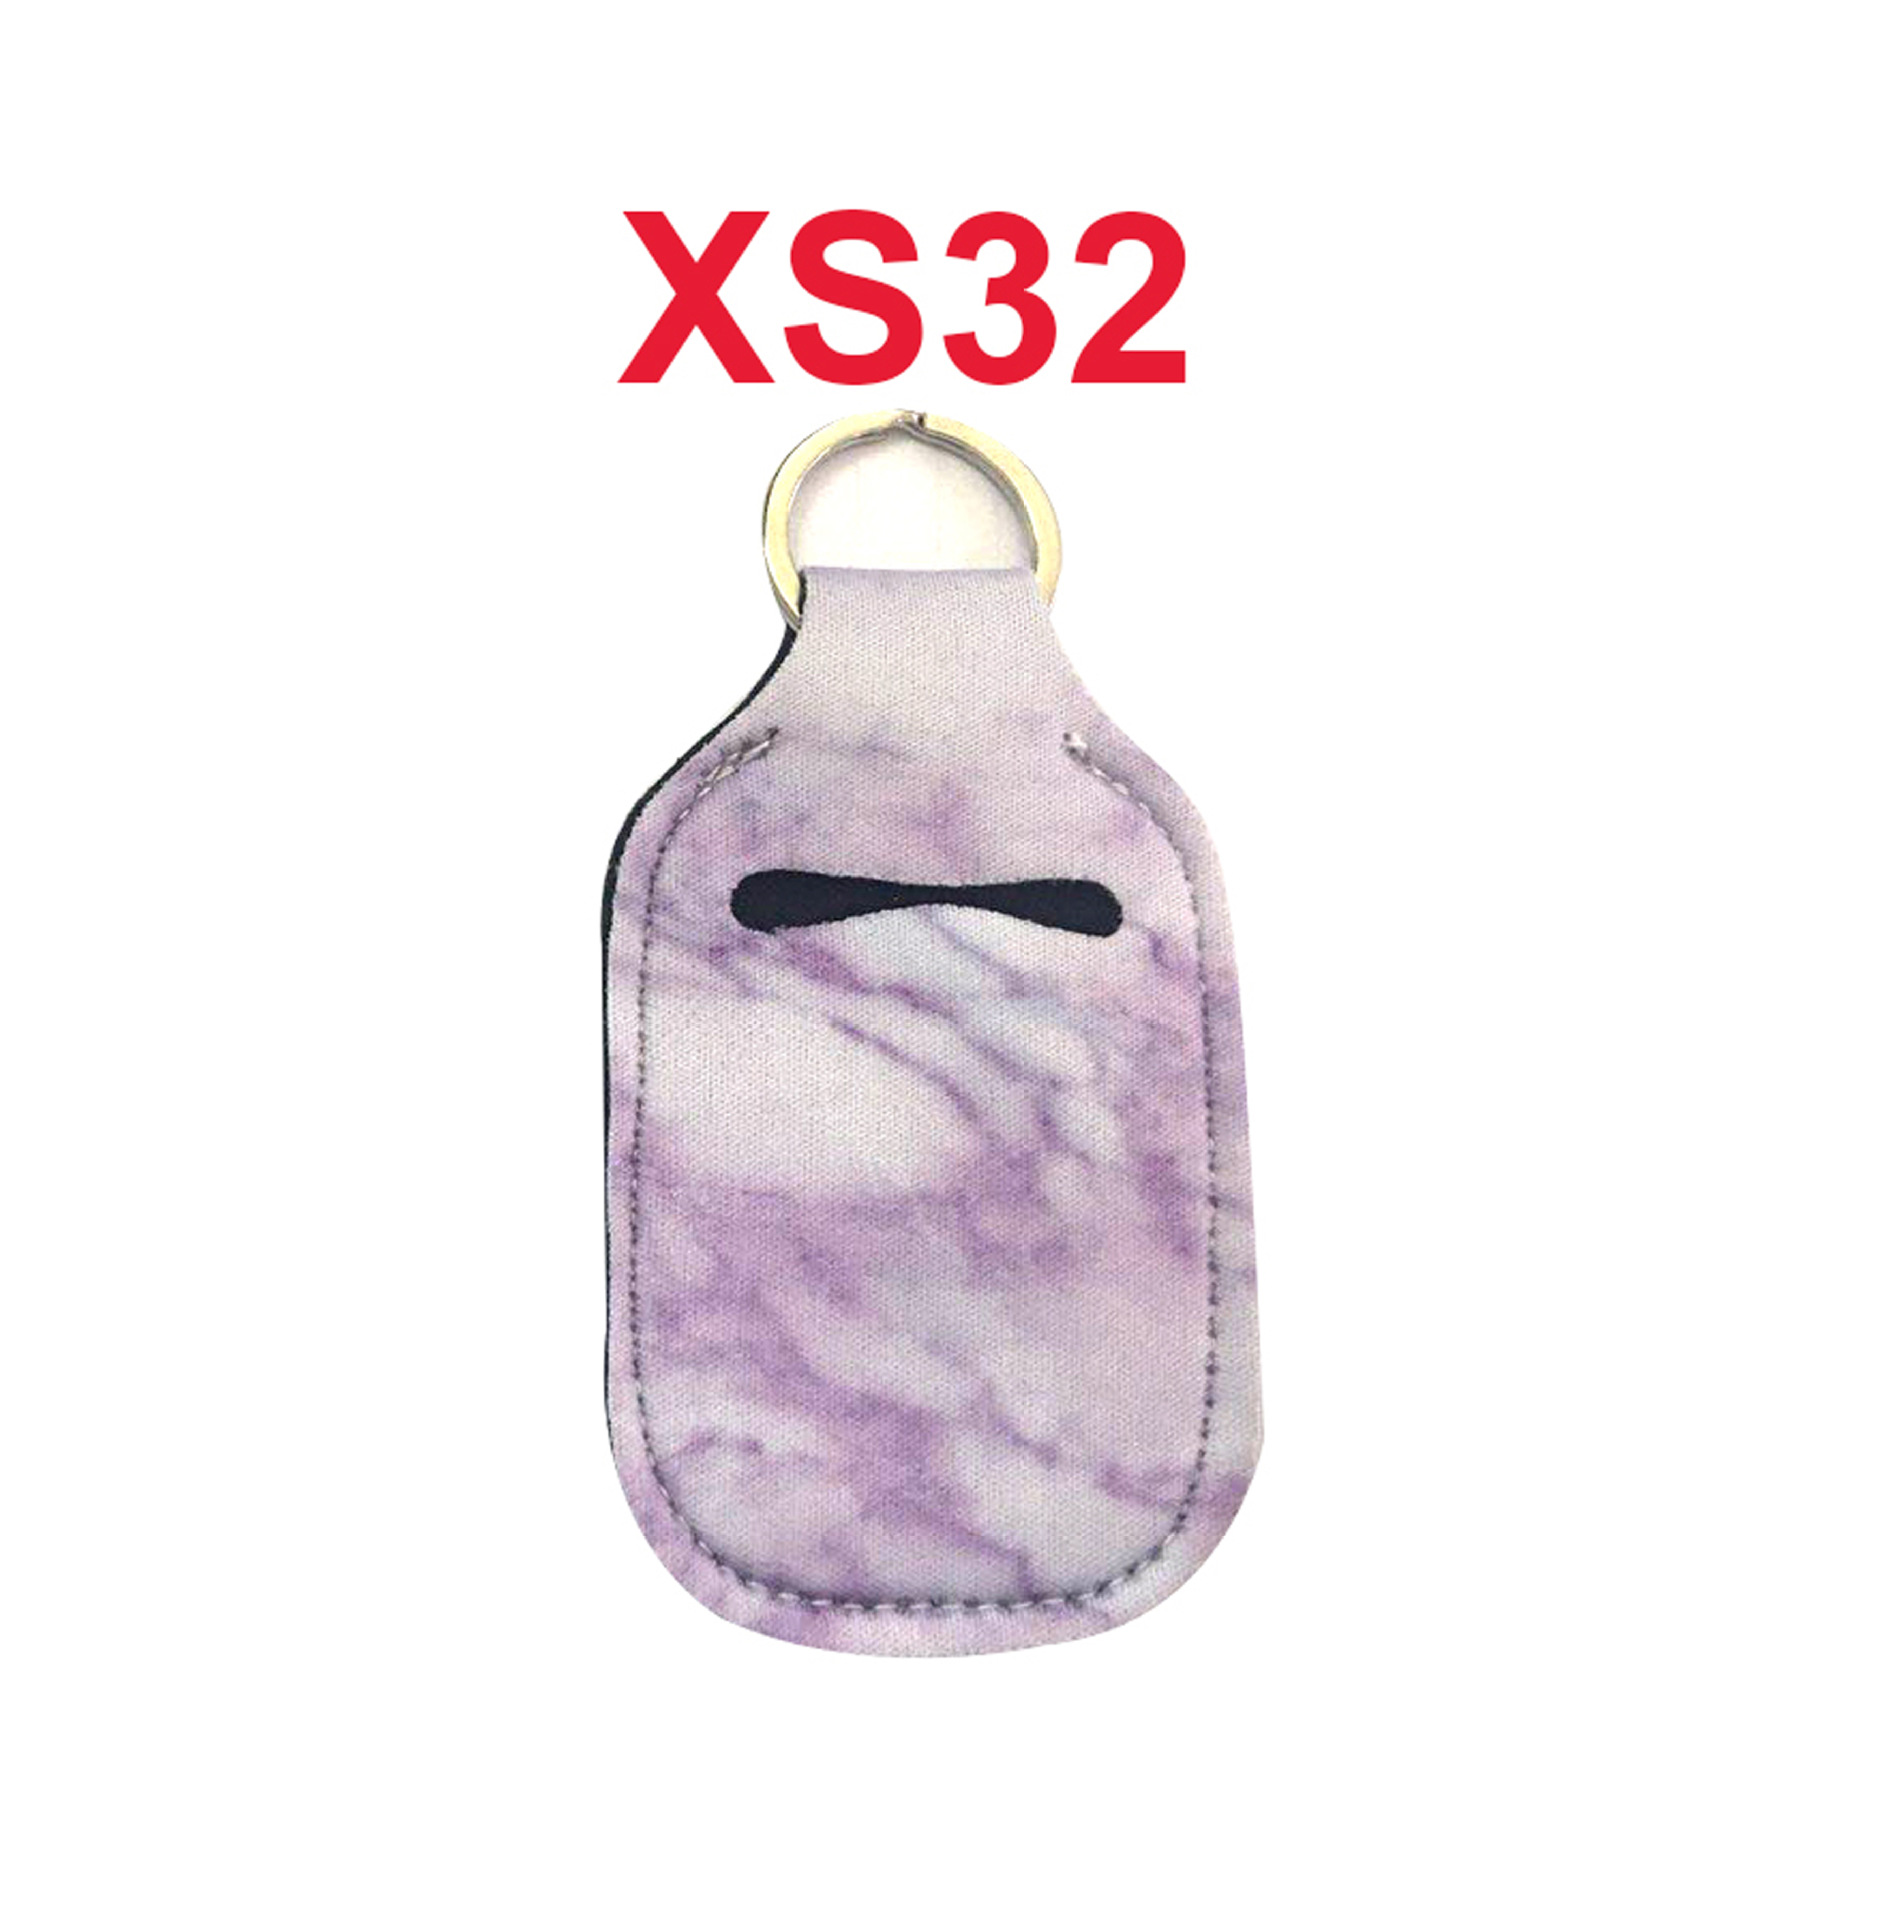 XS32